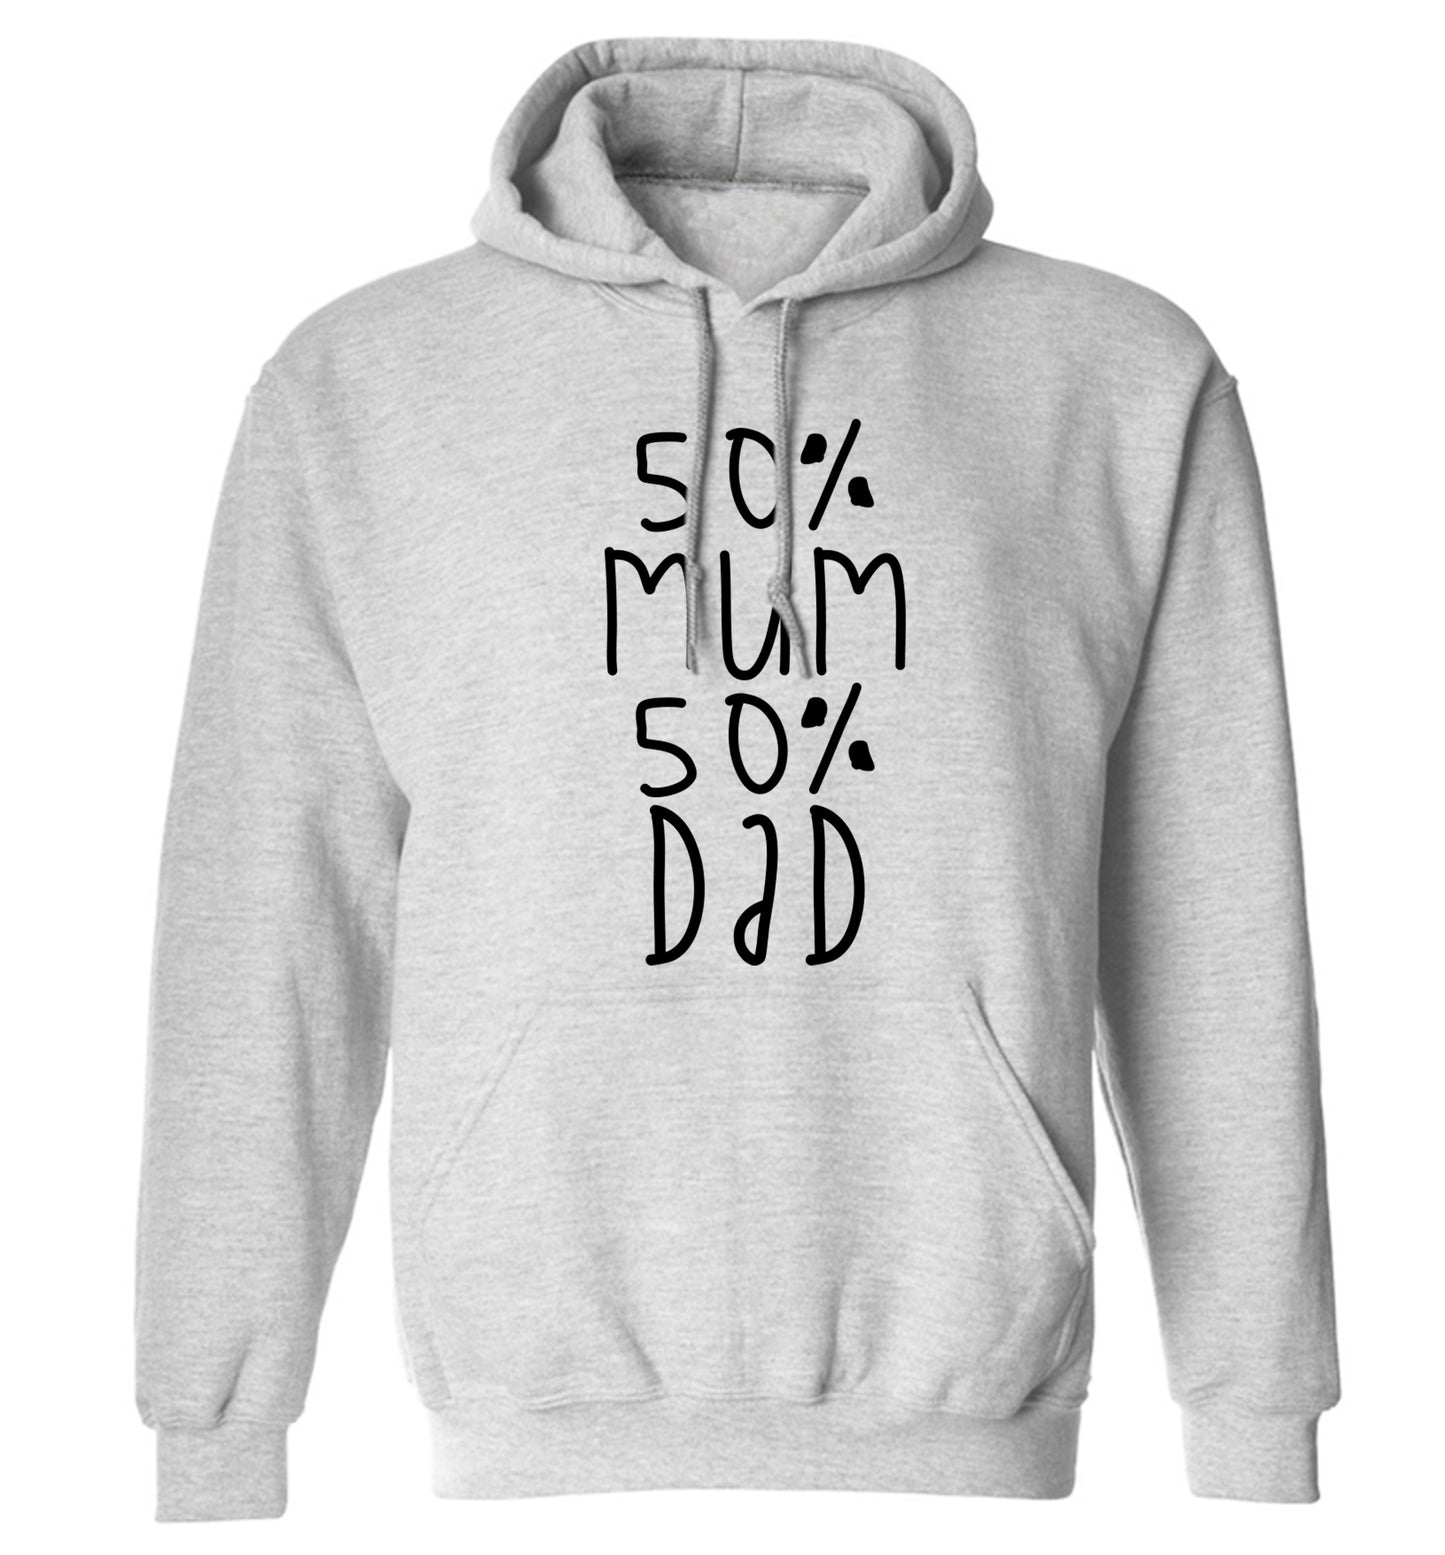 50% mum 50% dad adults unisex grey hoodie 2XL